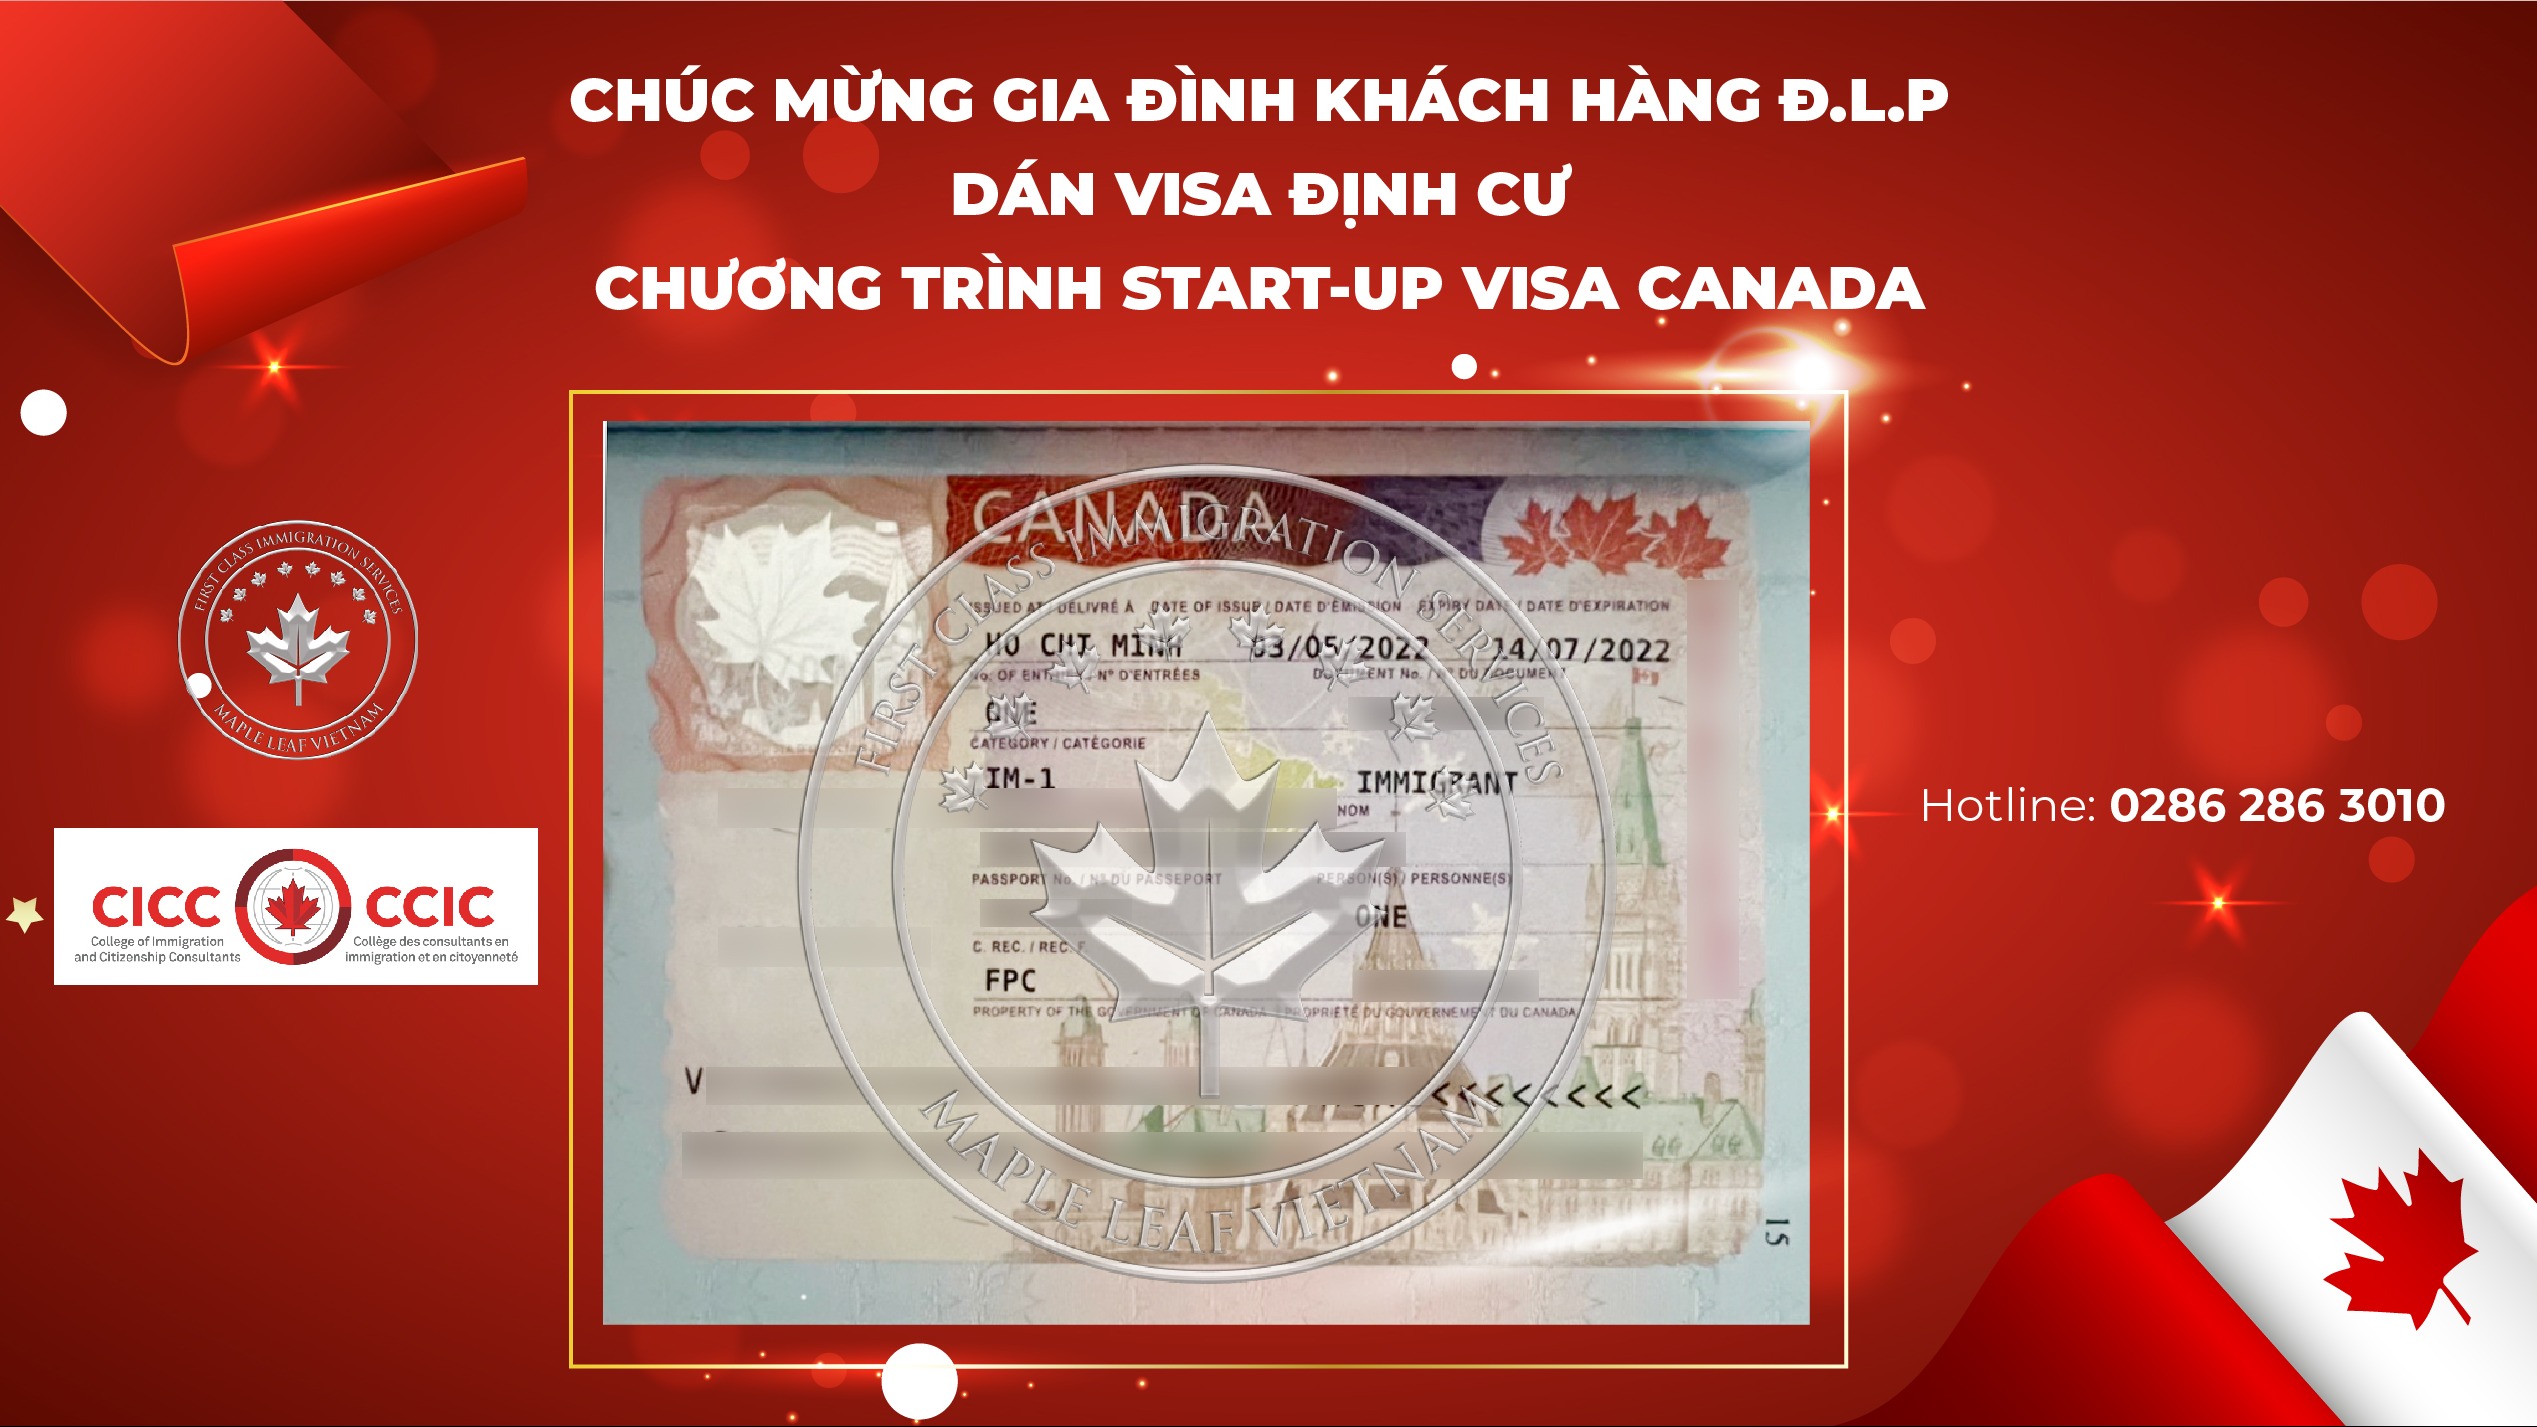 chuc-mung-gia-dinh-khach-hang-dlp-dan-visa-dinh-cu-chuong-trinh-start-up-visa-canada